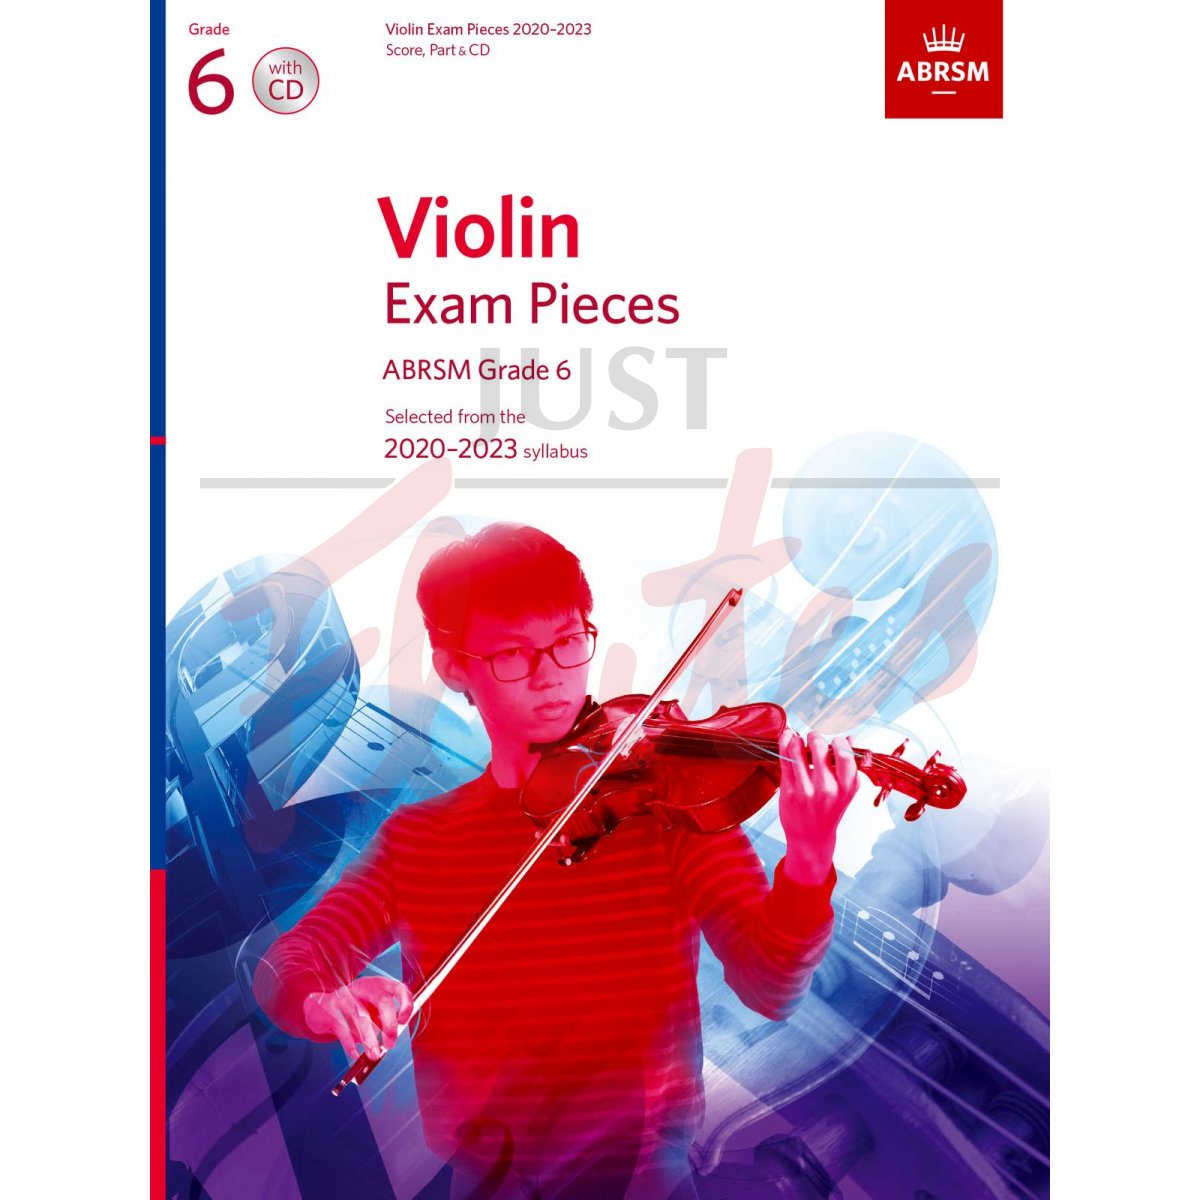 Violin Exam Pieces 2020-2023, Grade 6